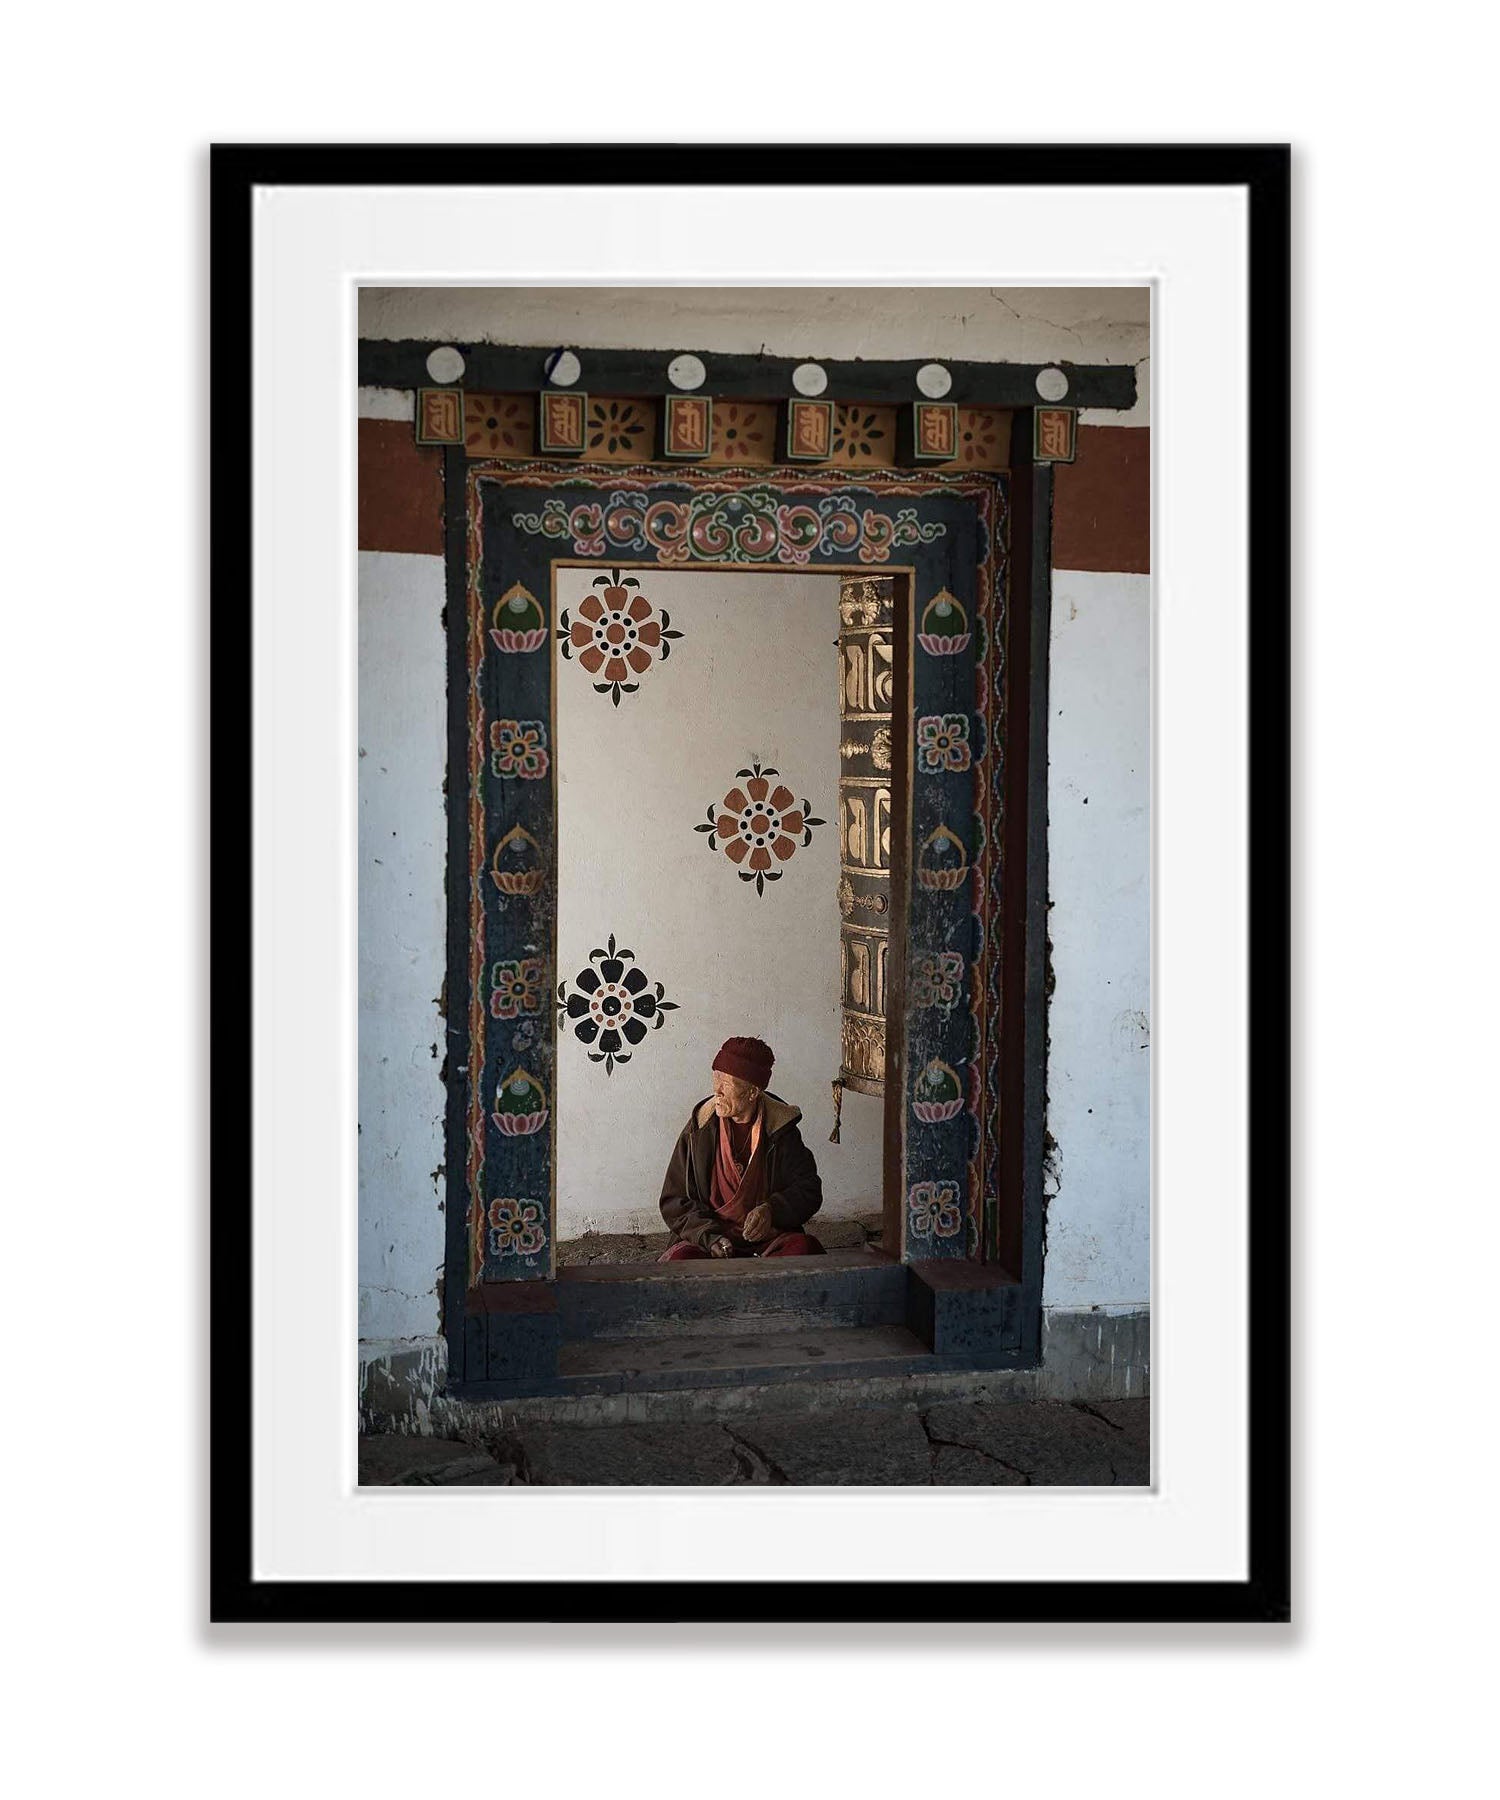 Monk Praying, Bhutan